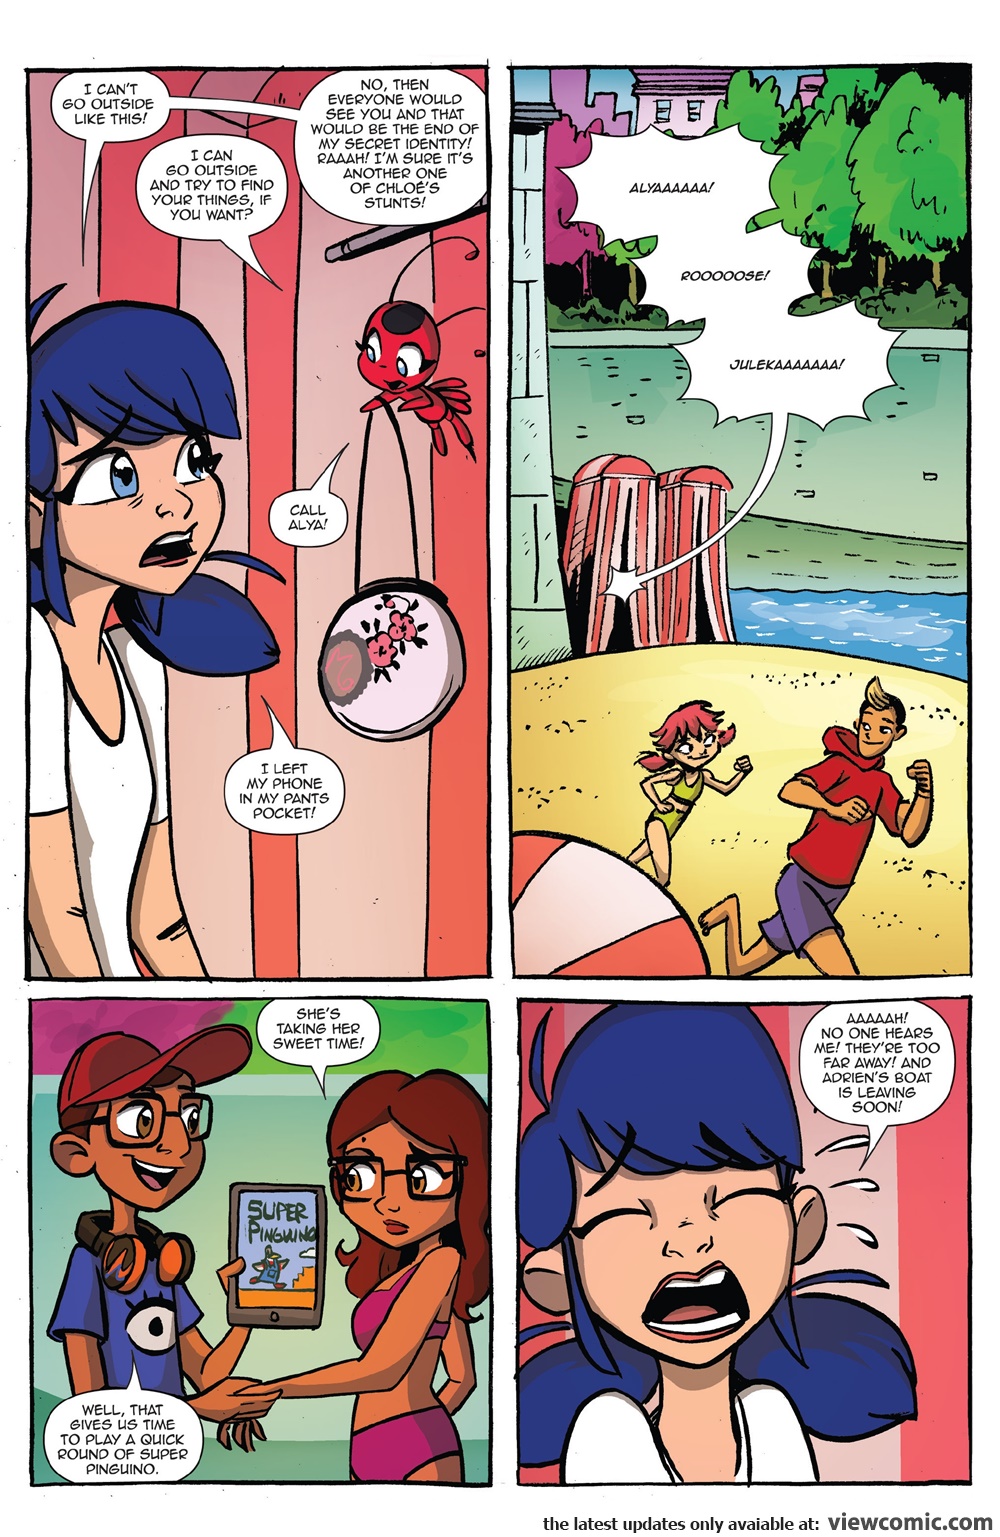 Ladybug and chat noir comics